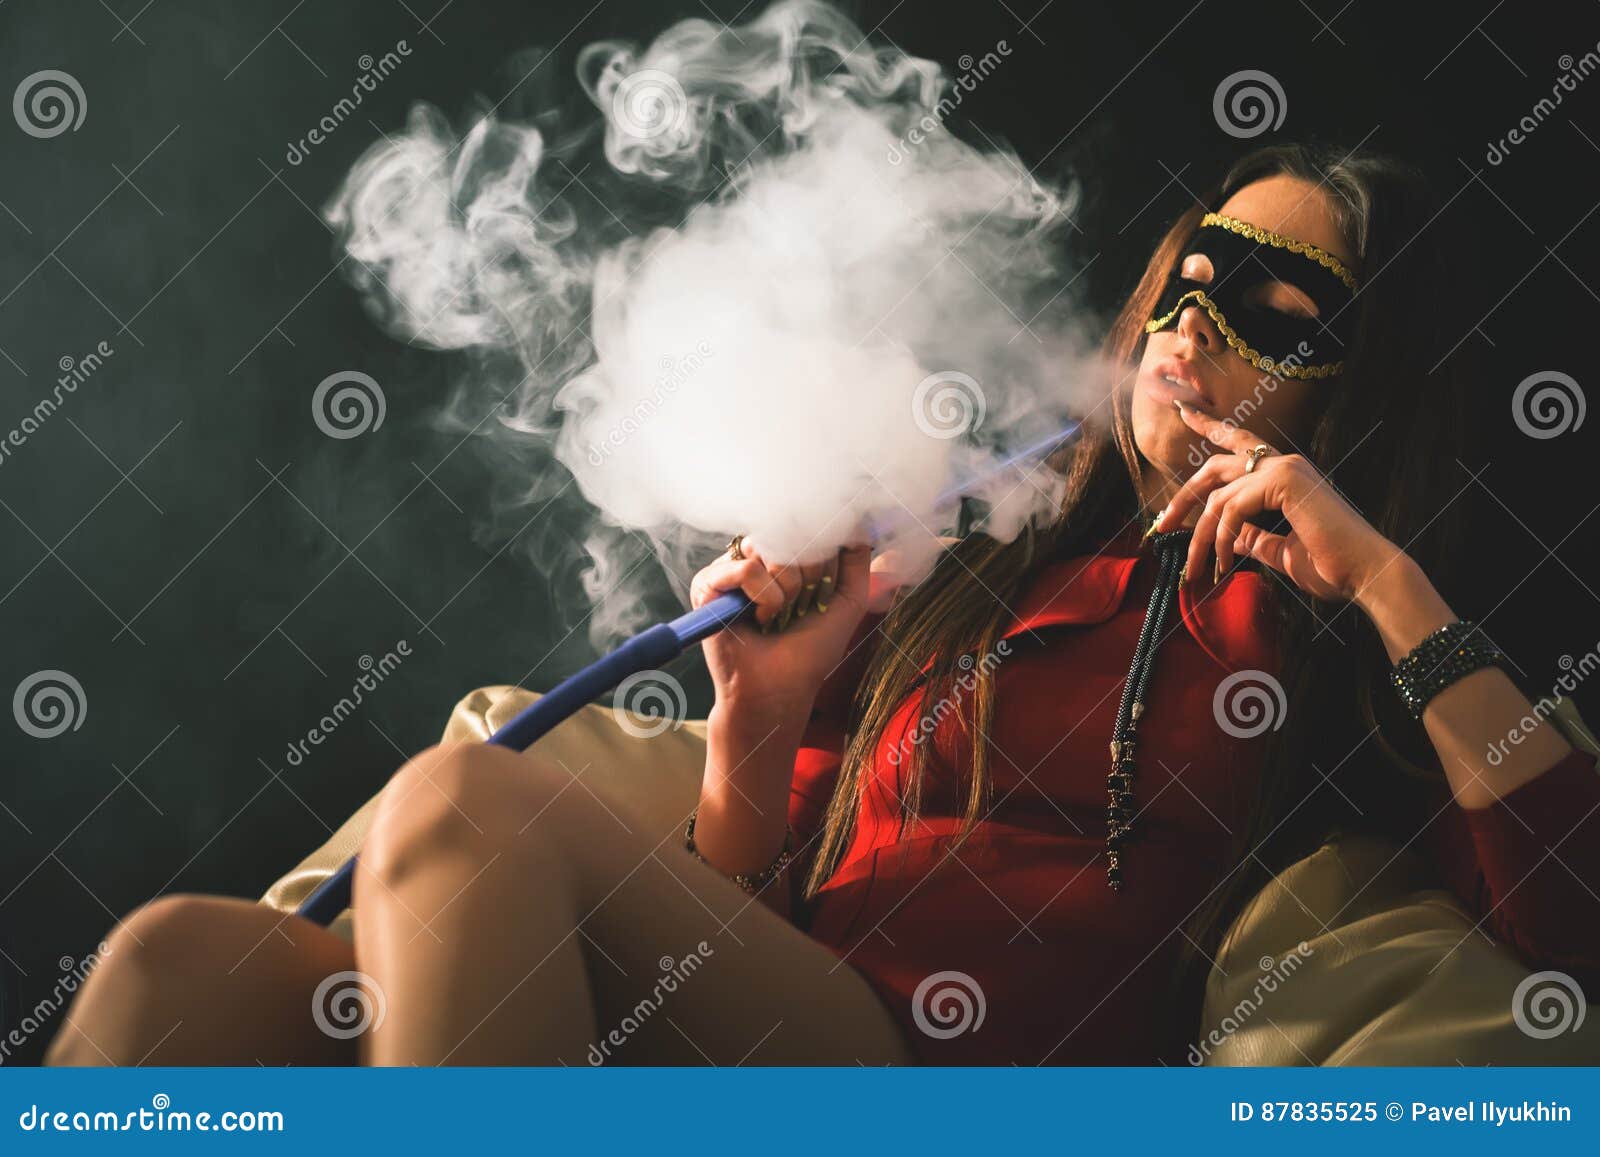 复古造型模型与长香烟。抽着长烟的女人。插画图片素材_ID:304477148-Veer图库